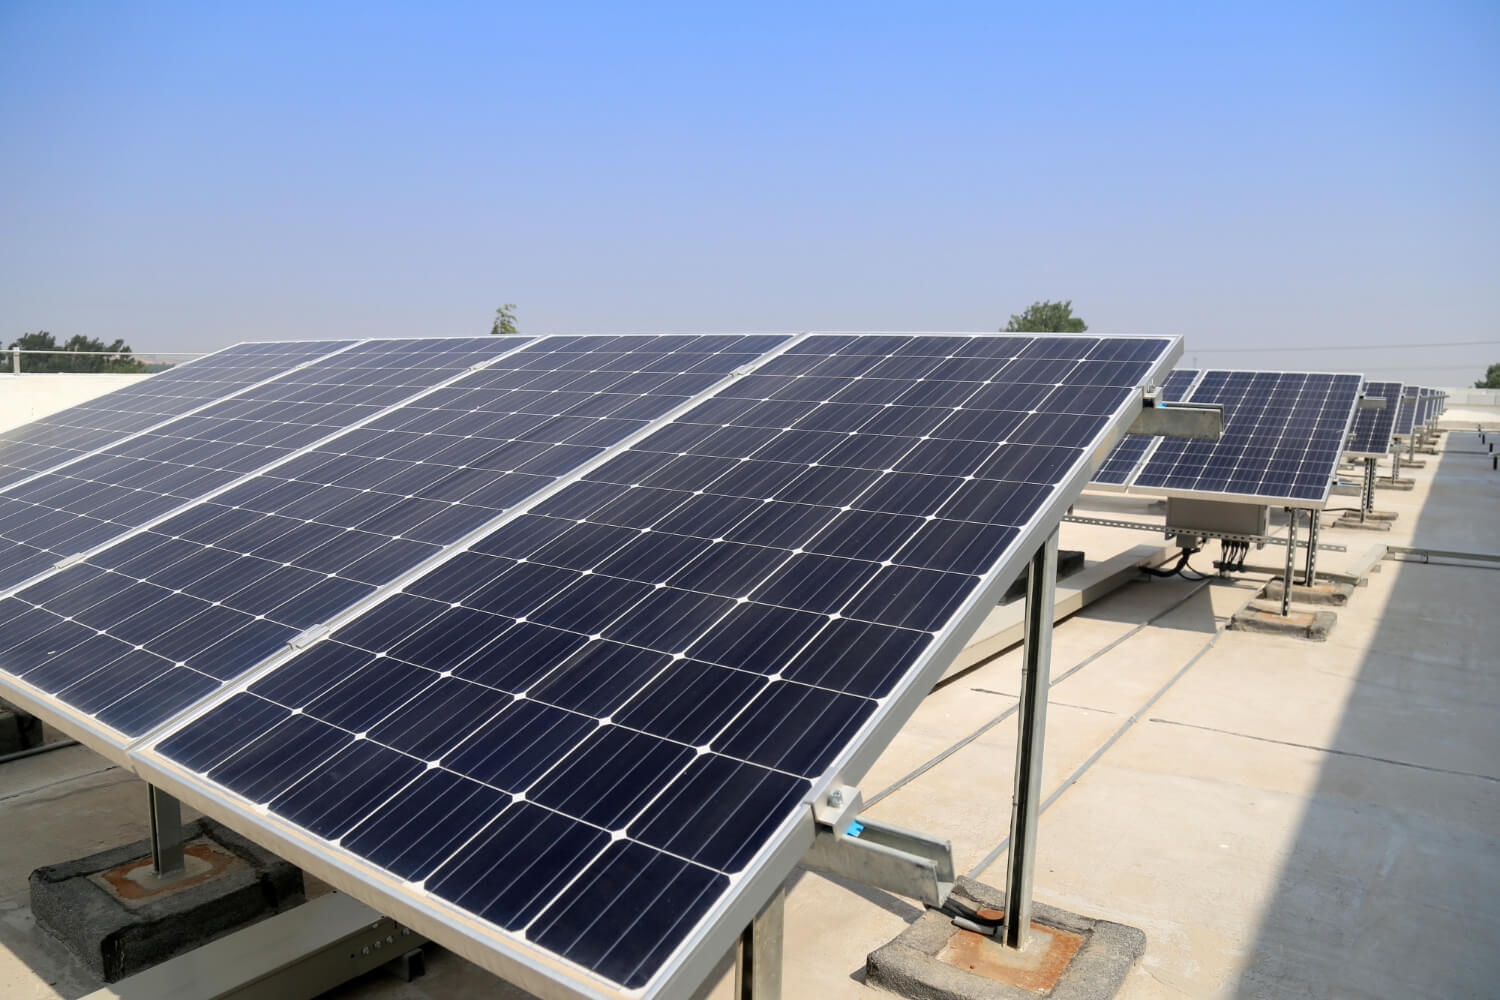 "إينوليس" تطلق تمويلًا مبتكرًا للألواح الشمسية لصالح الصناعيين والفلاحين بالمغرب